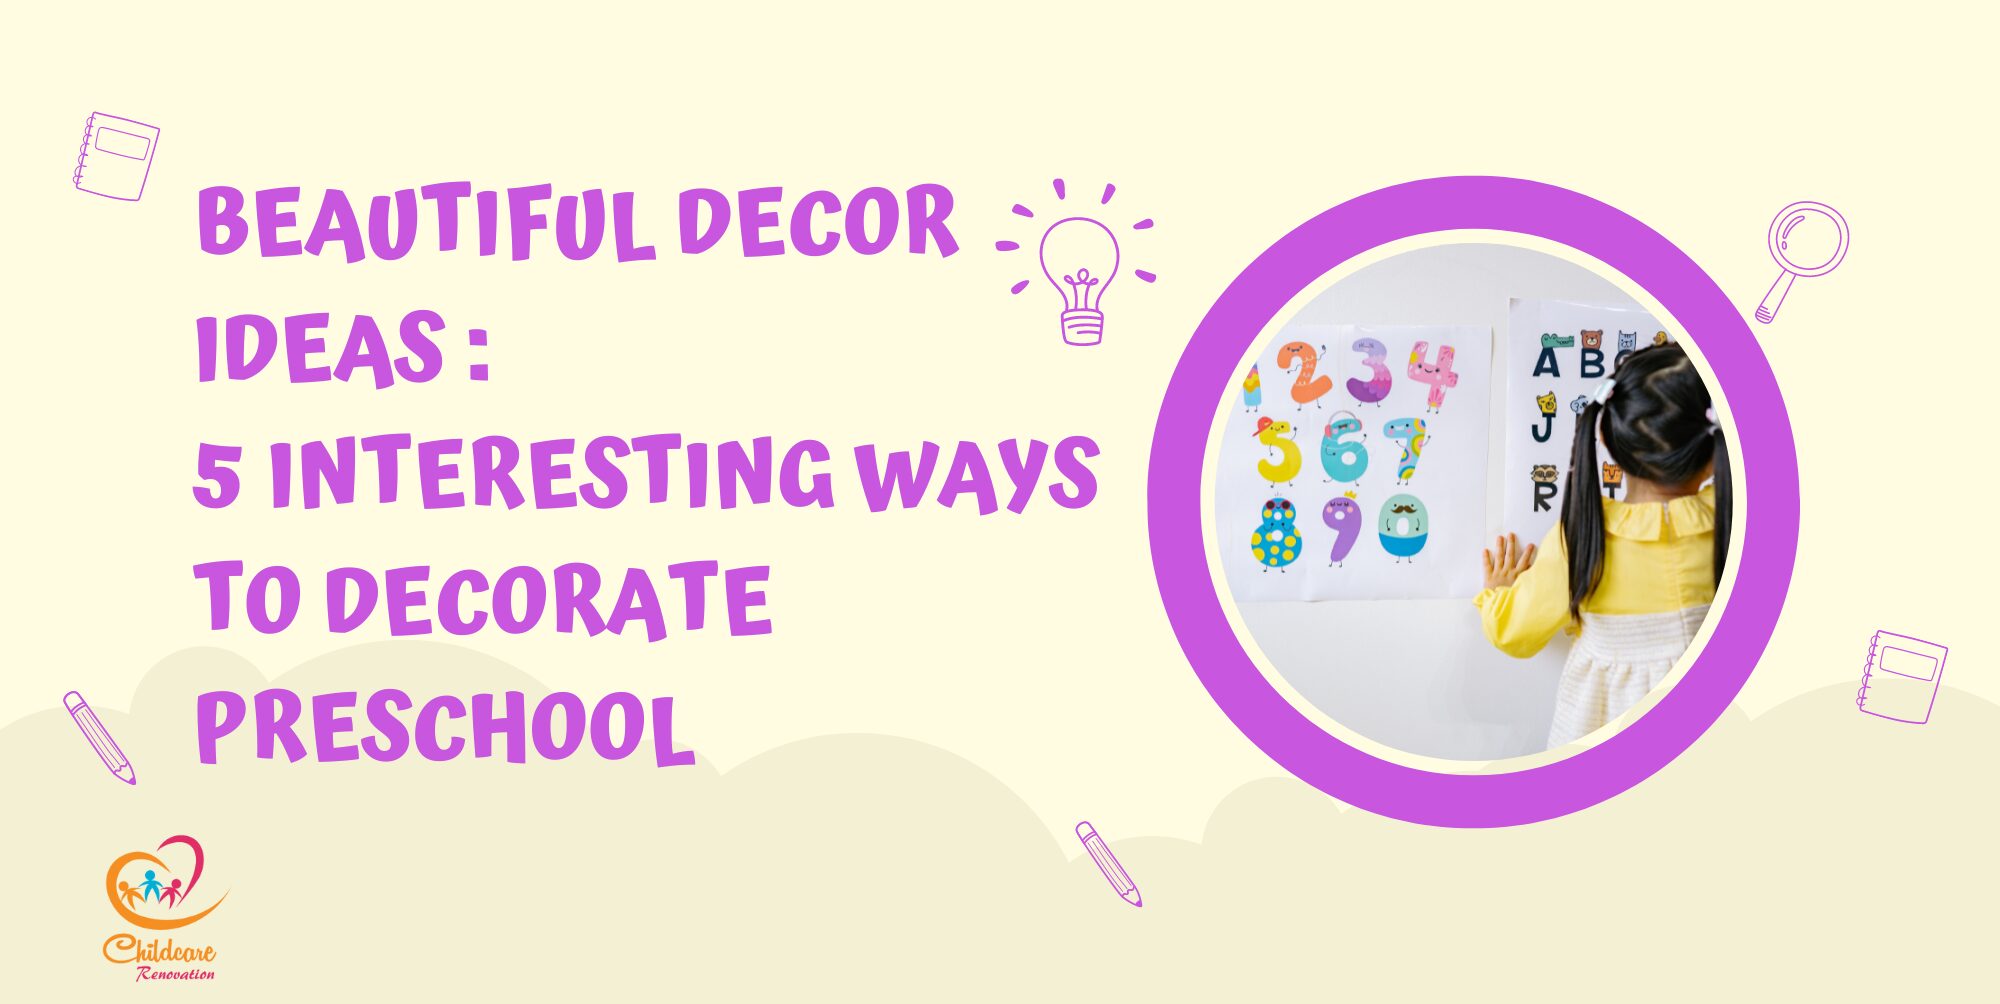 Beautiful Decor Ideas, Preschool, Decor